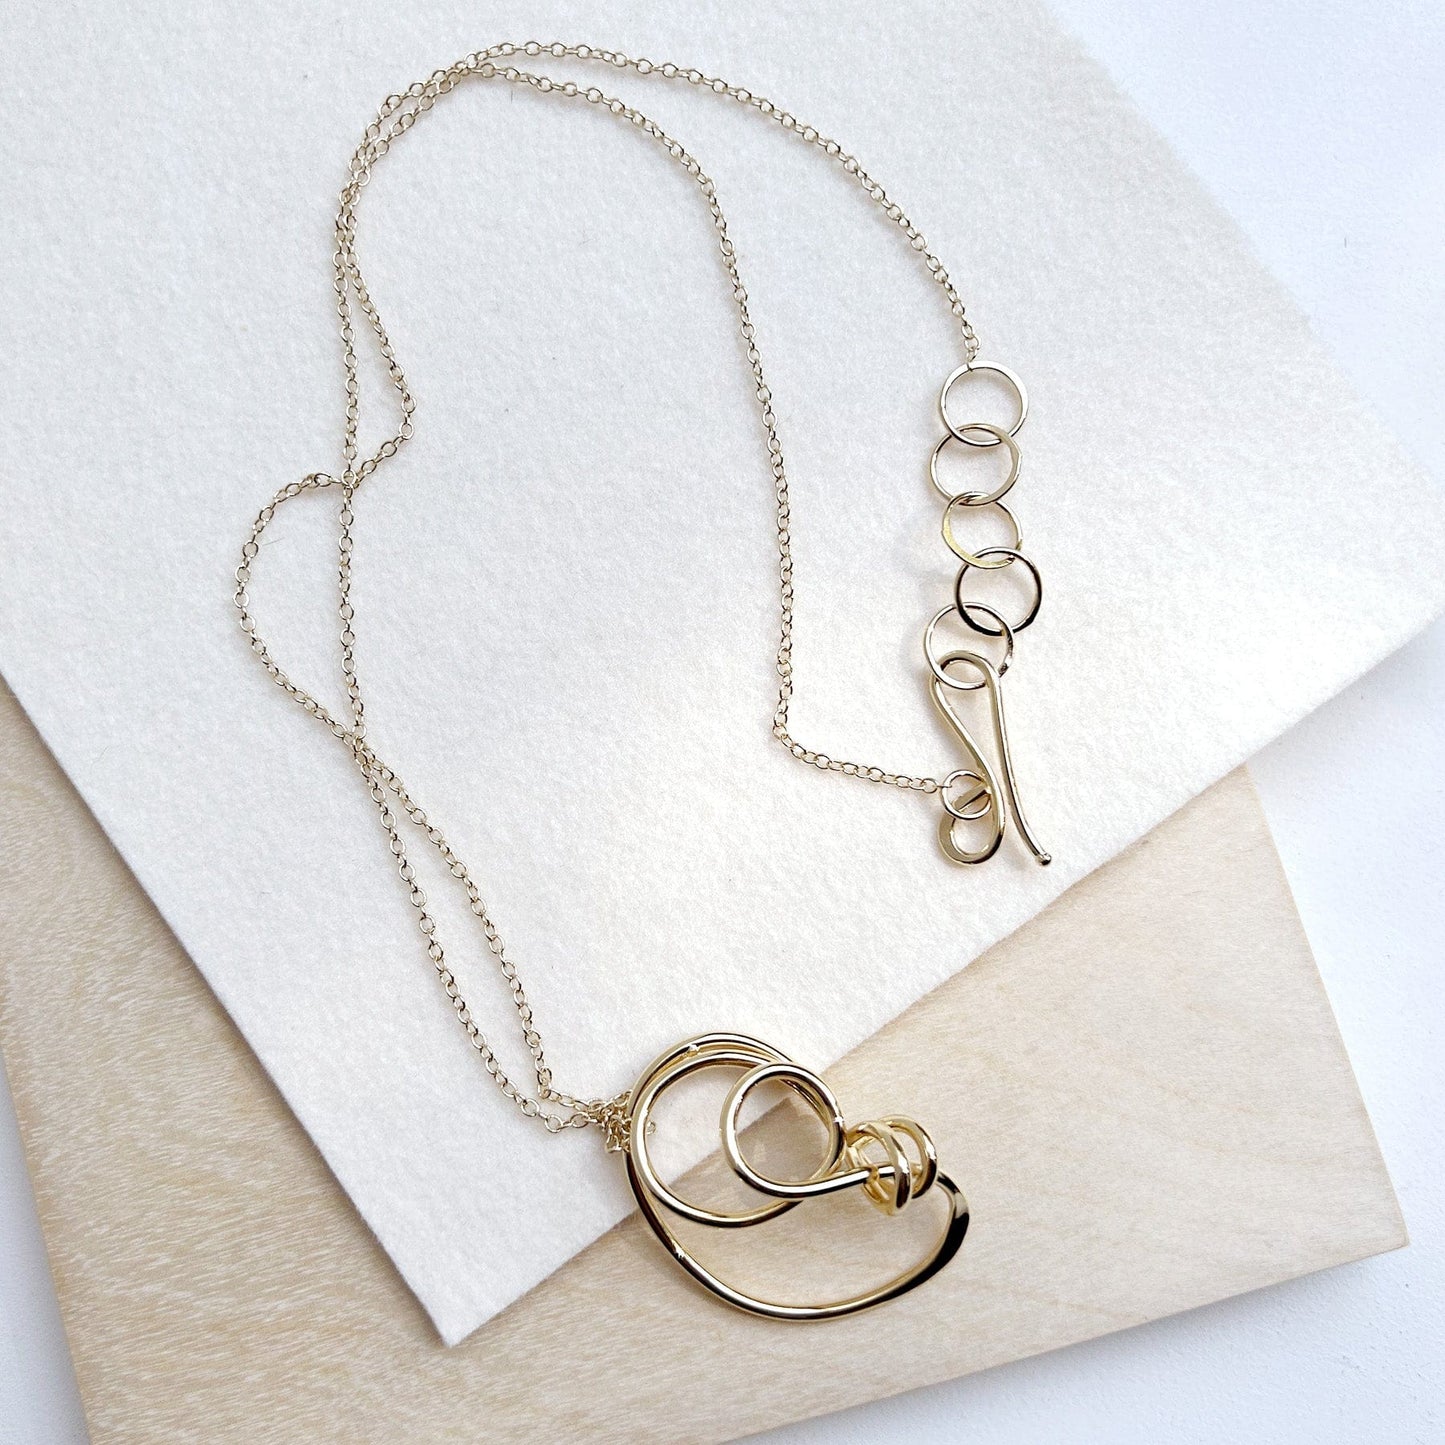 Klee Pendant Necklace Jewelry Oblik Atelier   